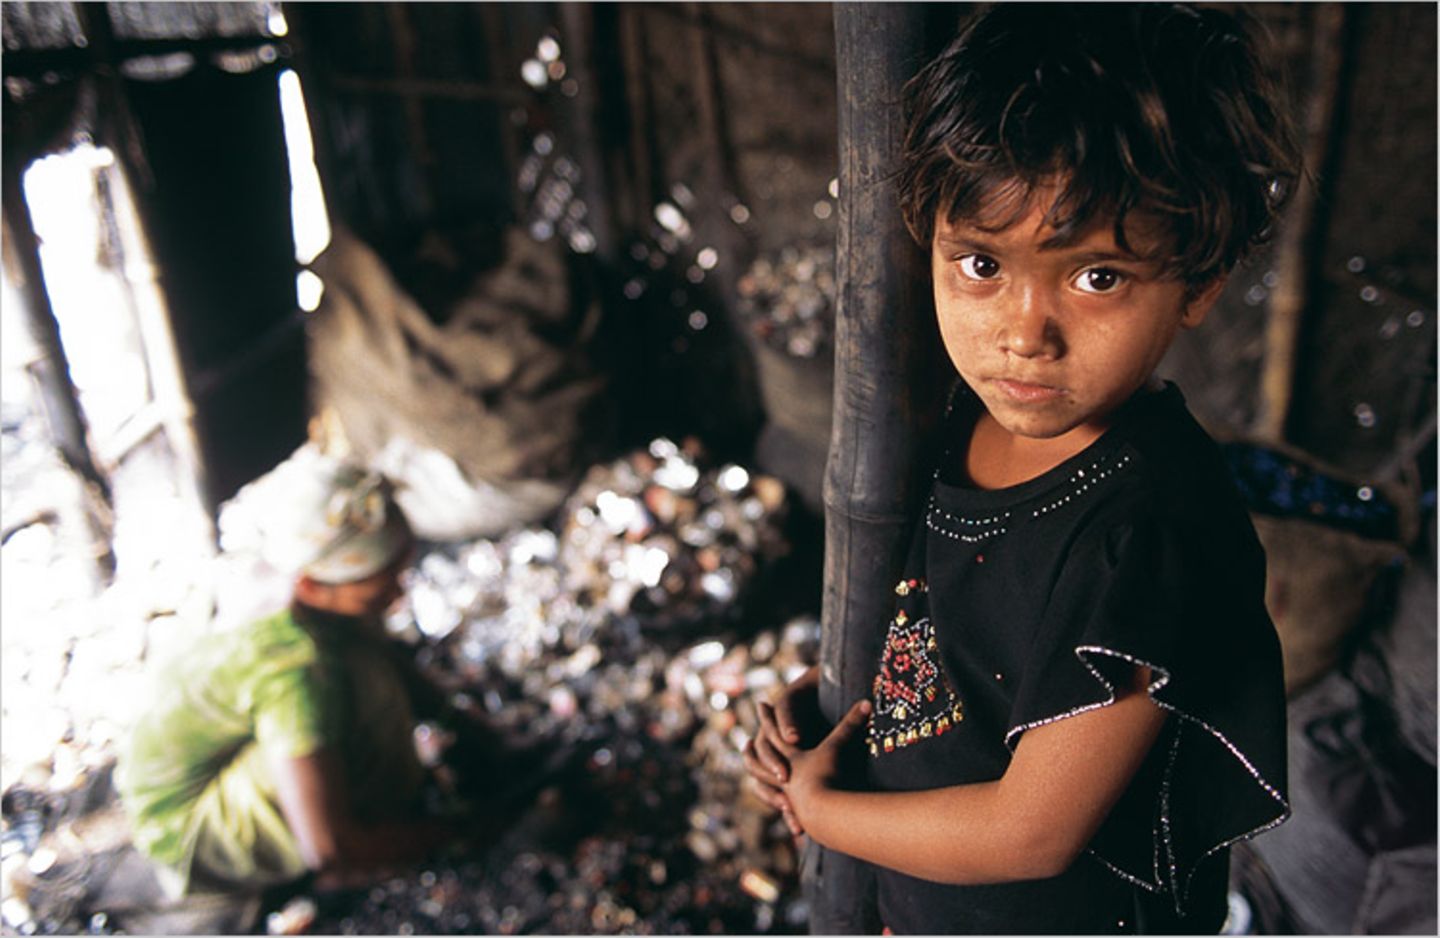 Bangladesch: Vom Reichtum im Abfall